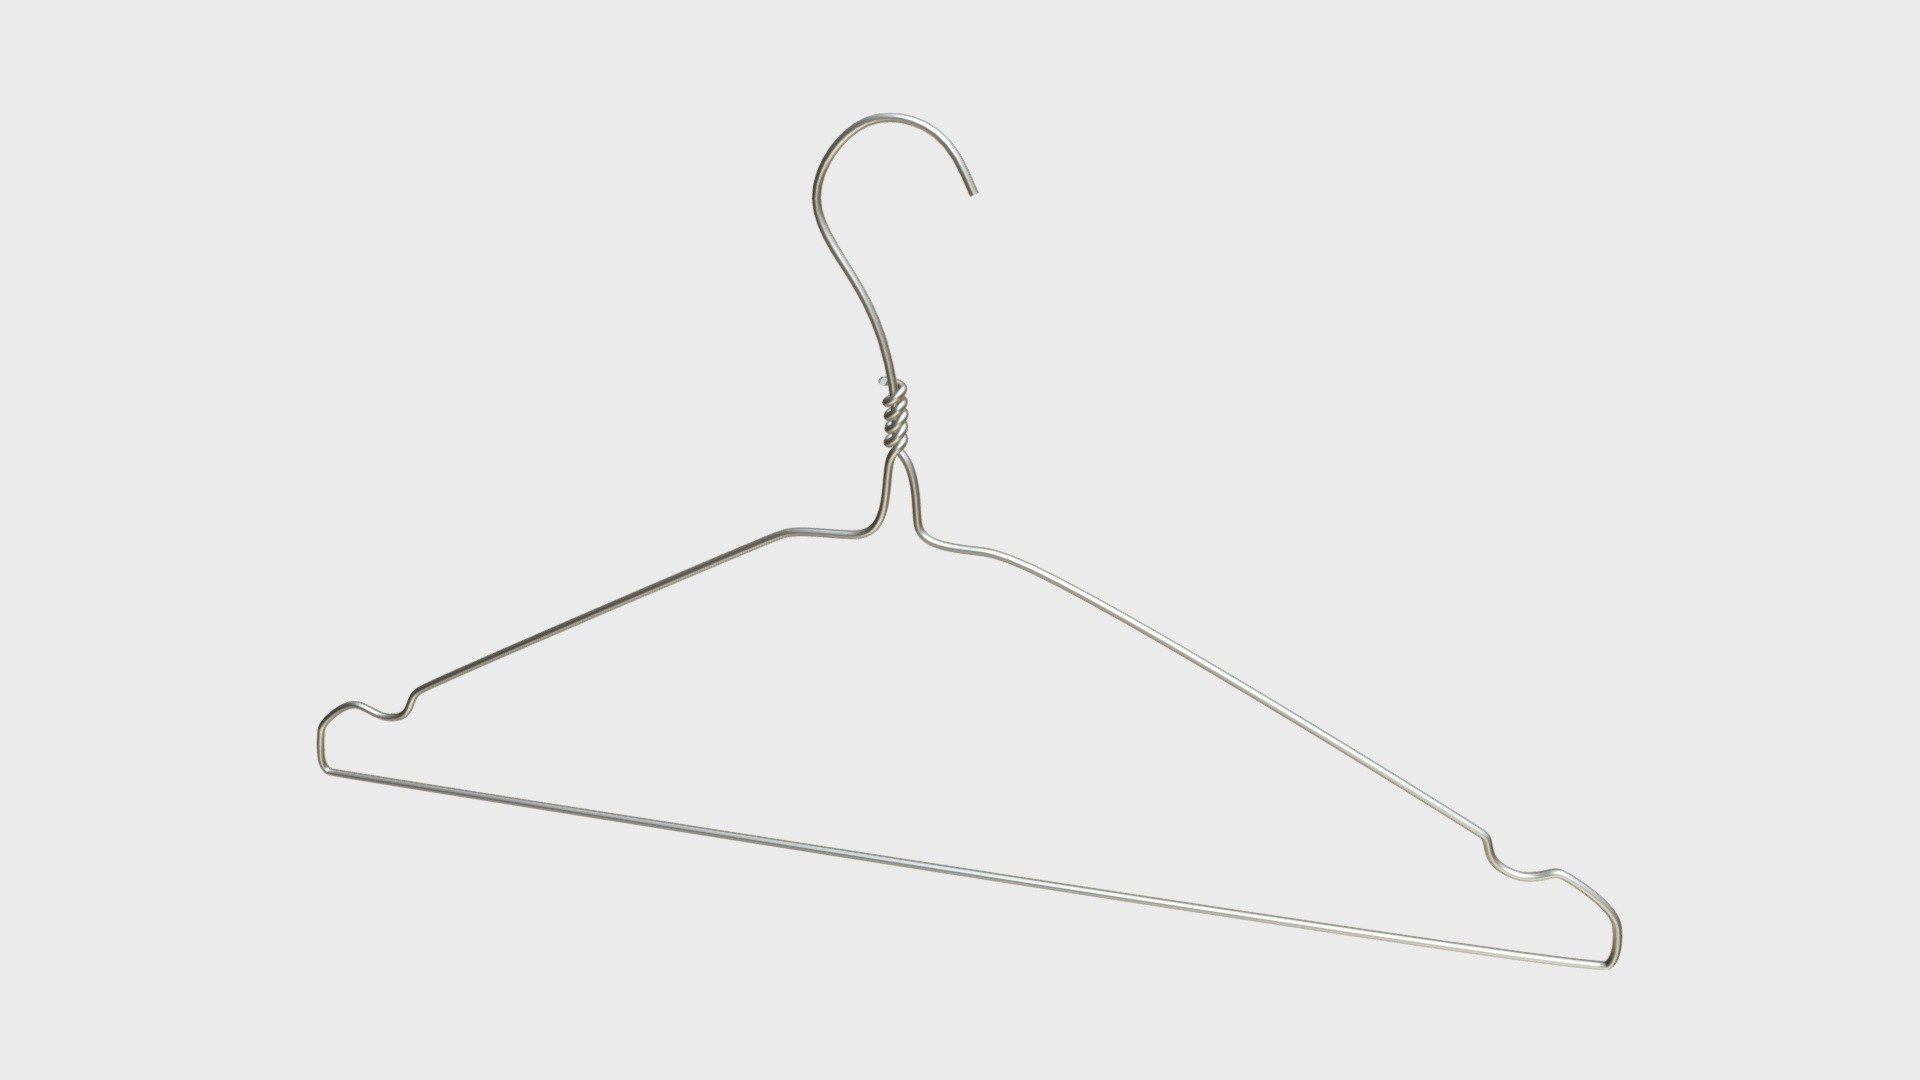 Metal wire coat hanger